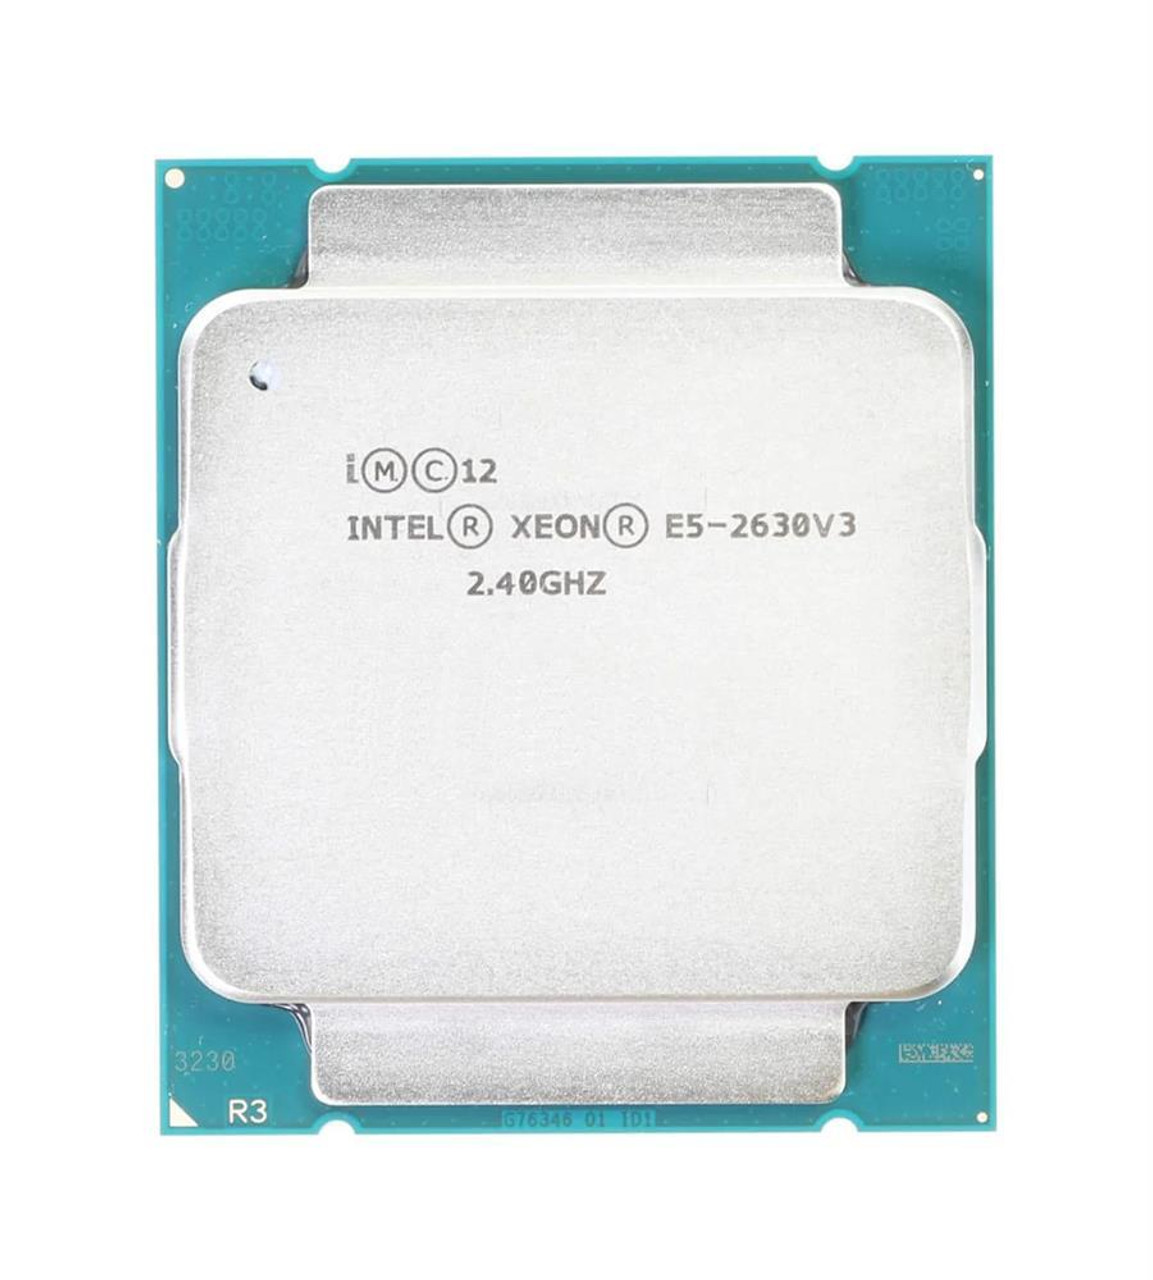 HPE 2.40GHz 8.00GT/s QPI 20MB L3 Cache Intel Xeon E5-2630 v3 8 Core Processor Upgrade for Apollo 4200 Gen9